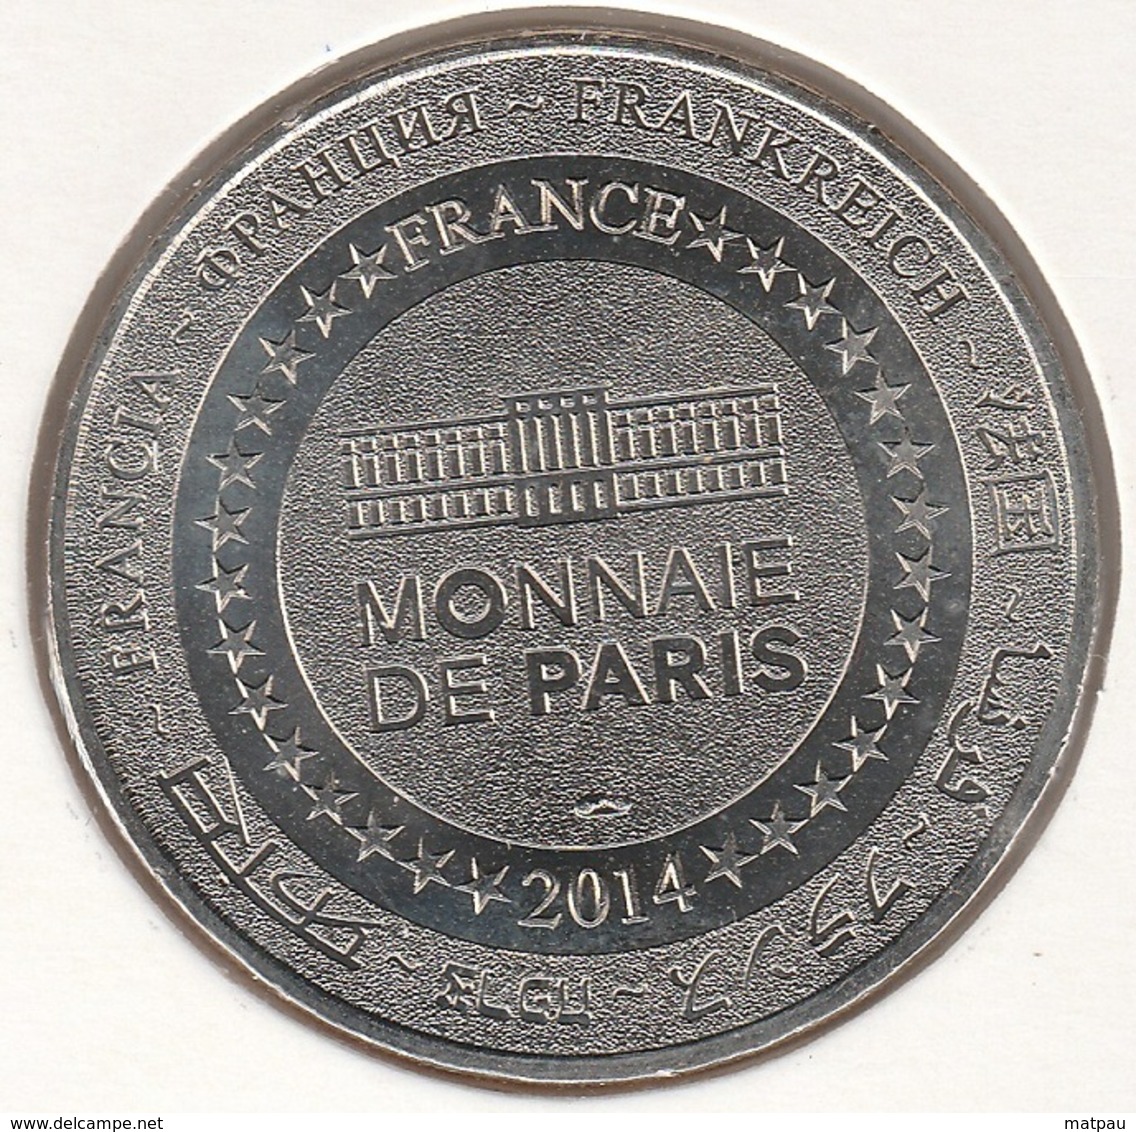 MONNAIE DE PARIS 87 SAINT VICTURIEN - Une Médaille Pour La Paix - Blanche - 2014 - 2007